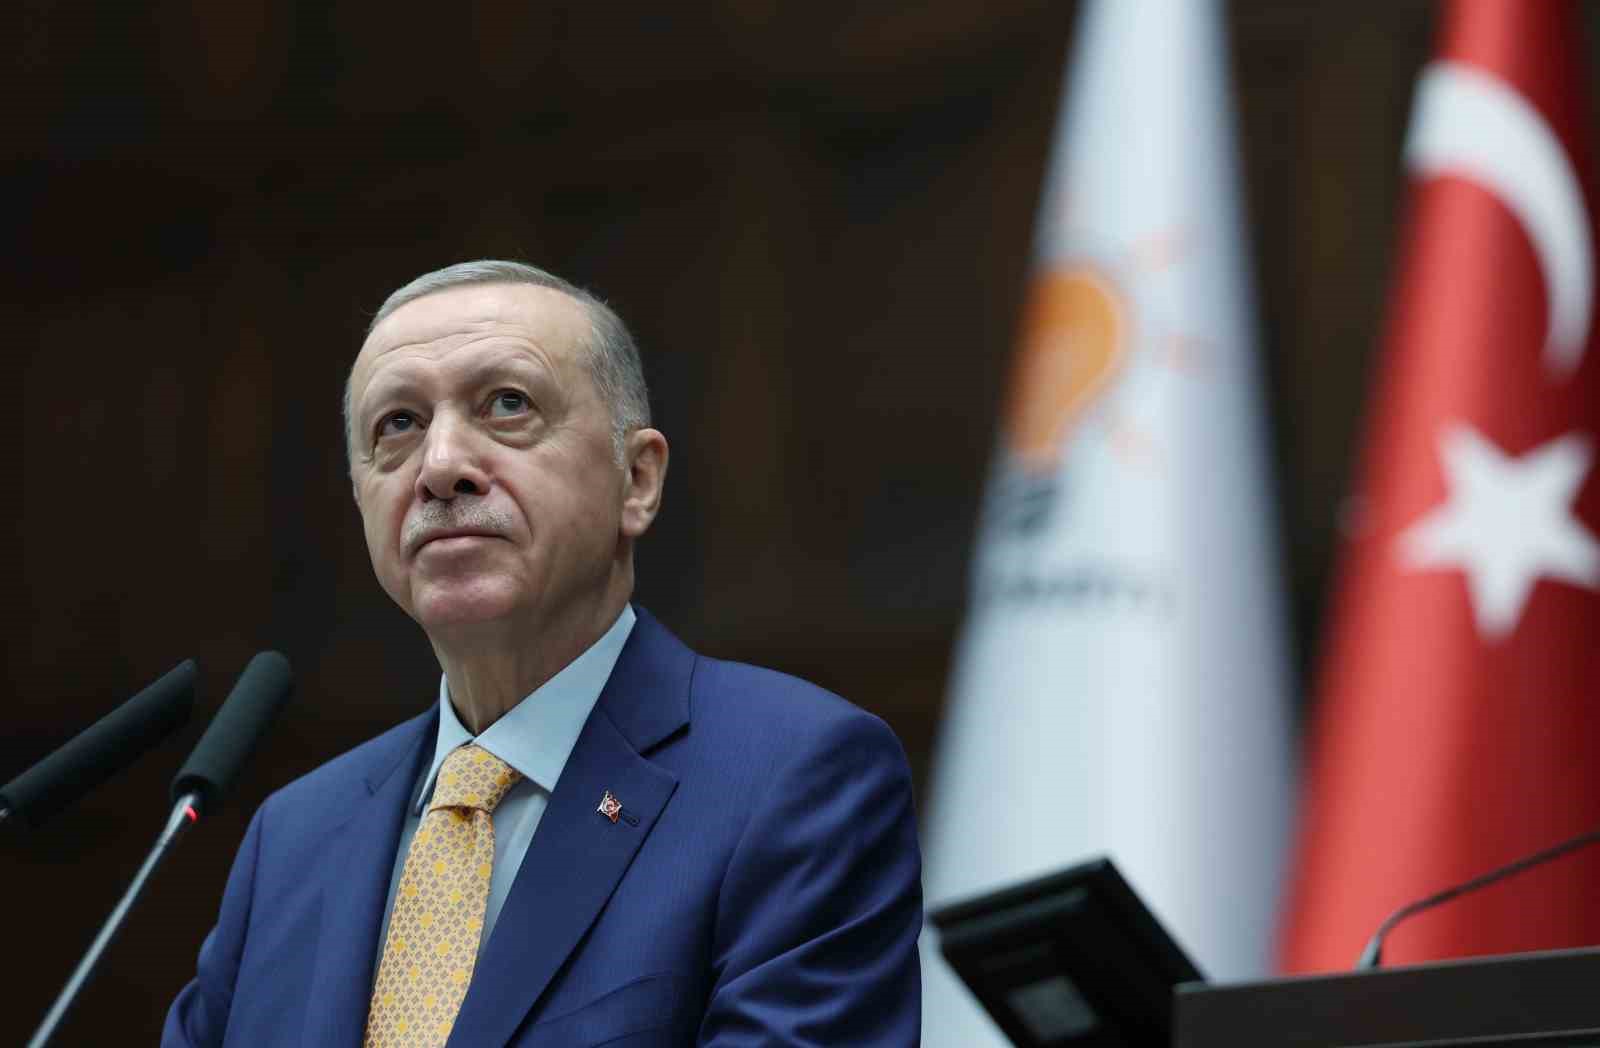 Cumhurbaşkanı Erdoğan: "Biz bitti demeden hiçbir şey bitmez"
